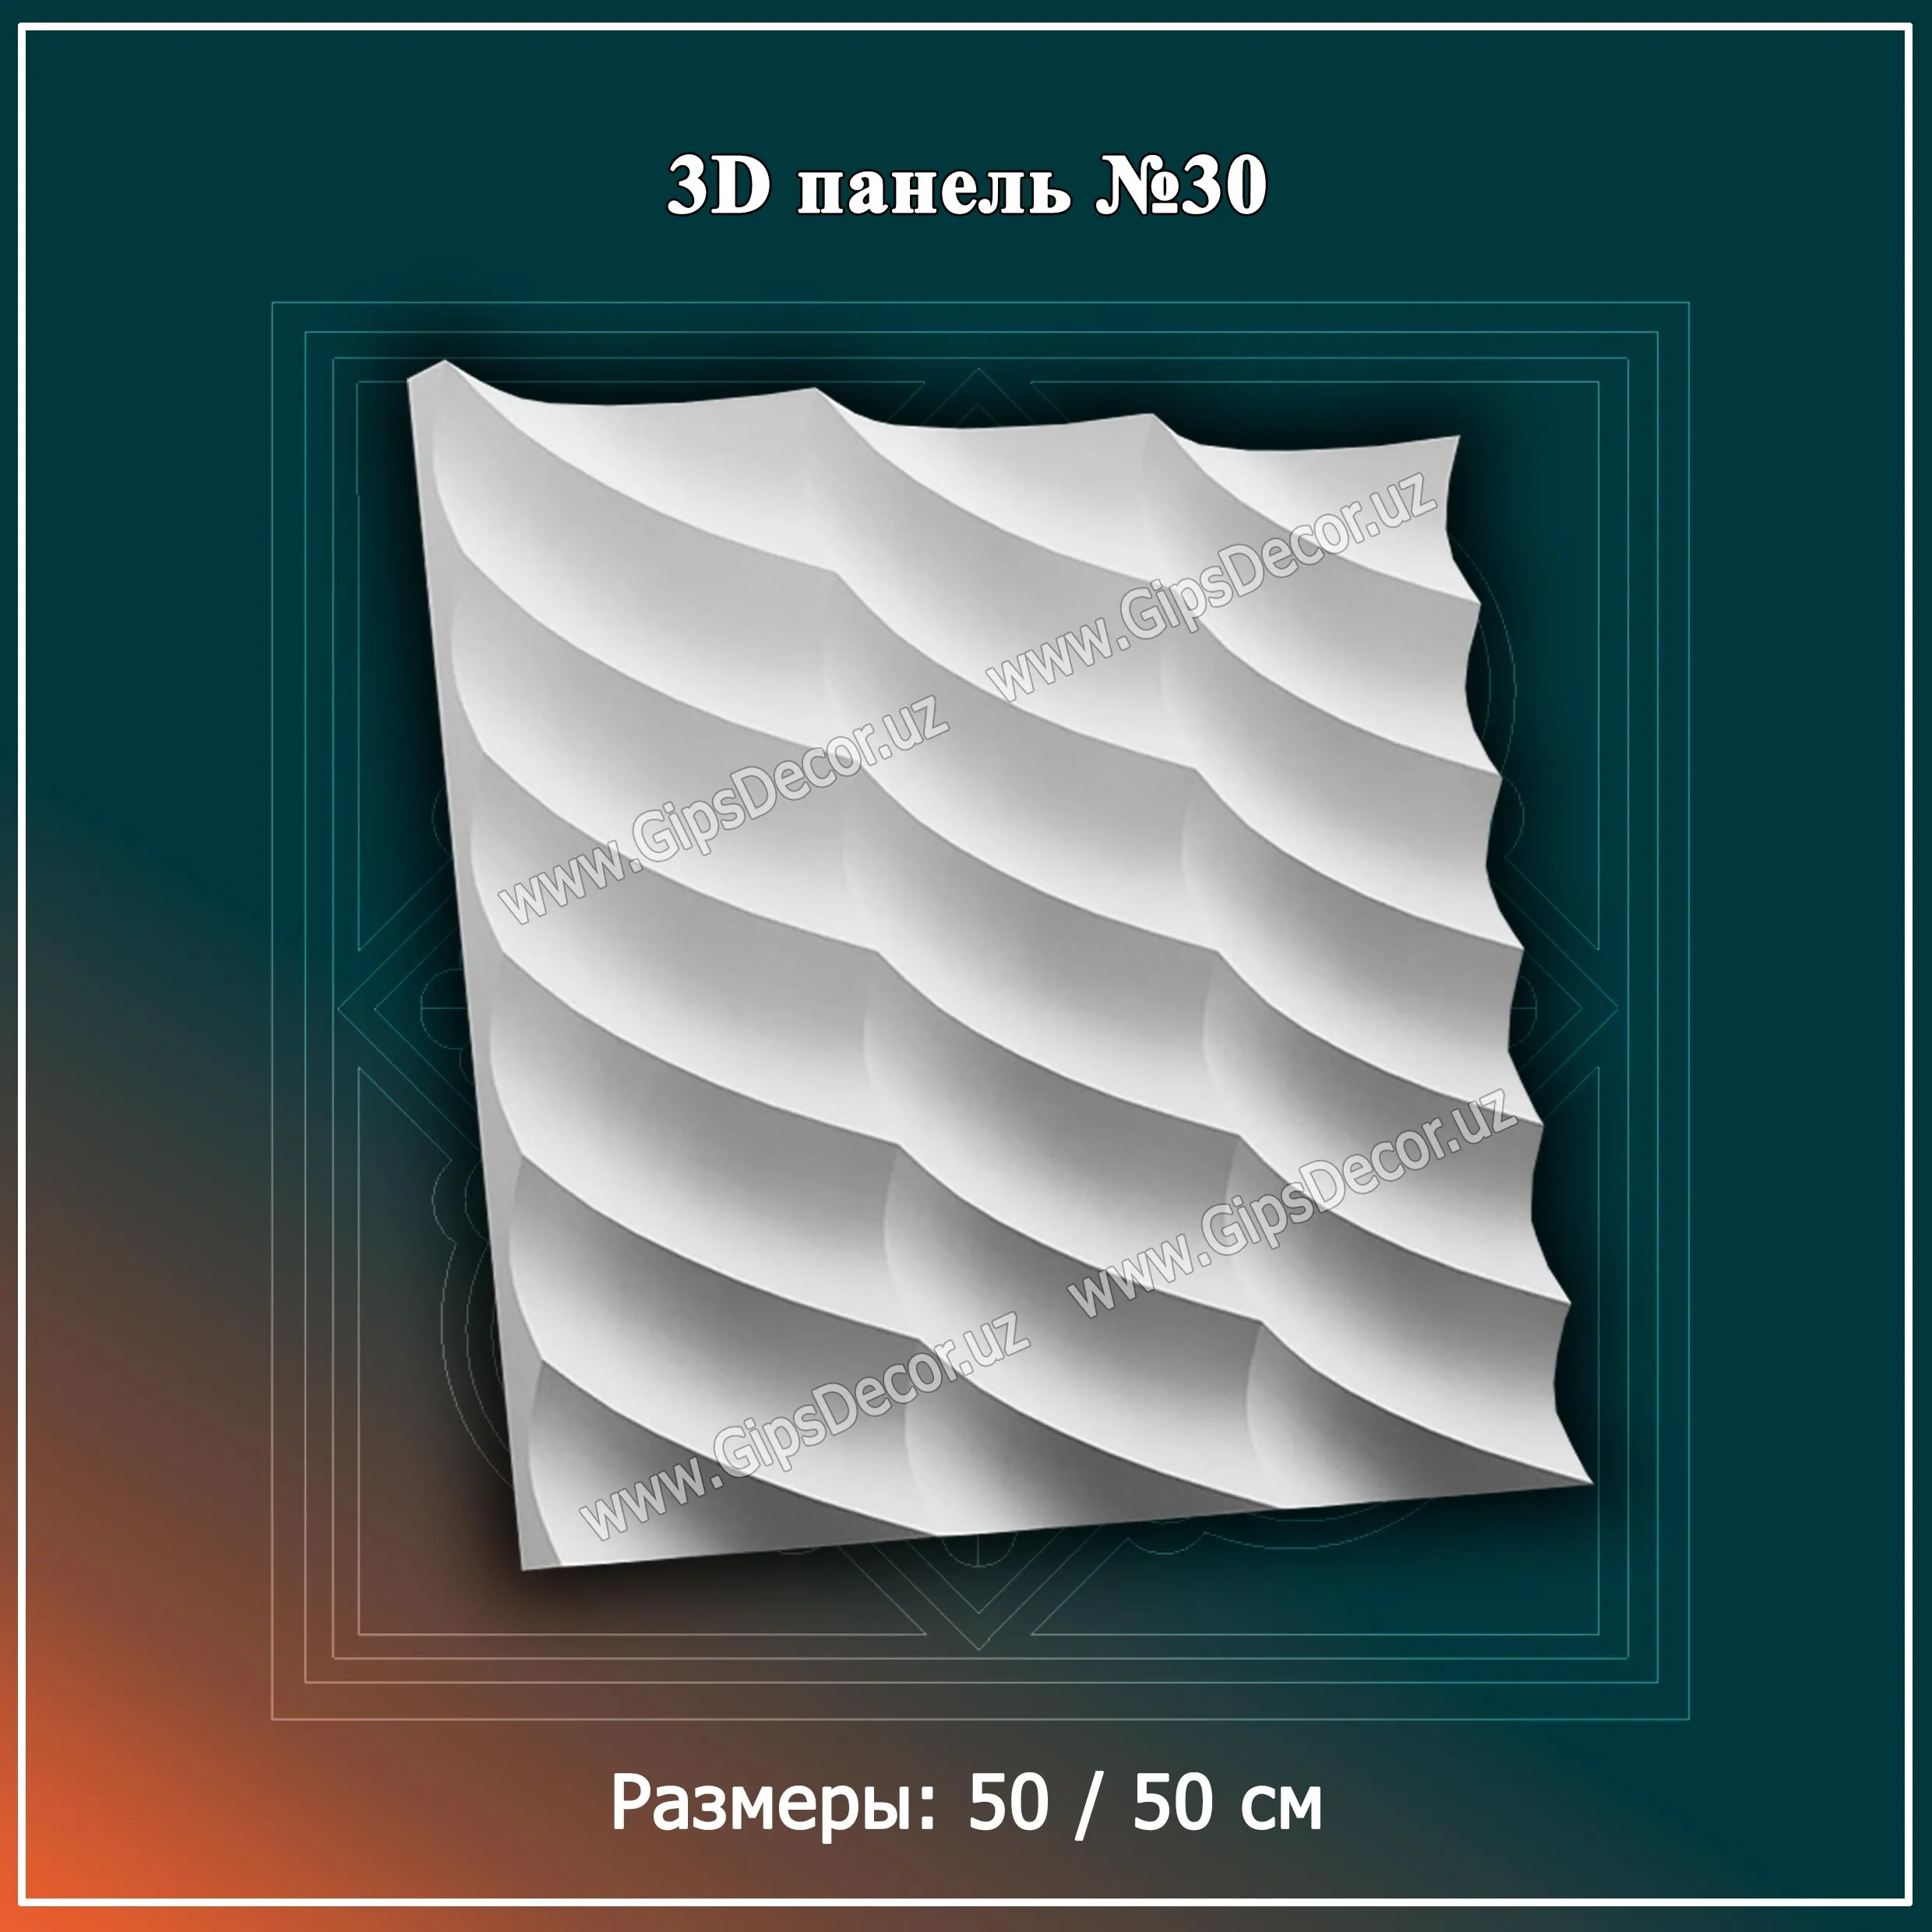 3D Панель №32 Размеры: 50 / 50 см#1